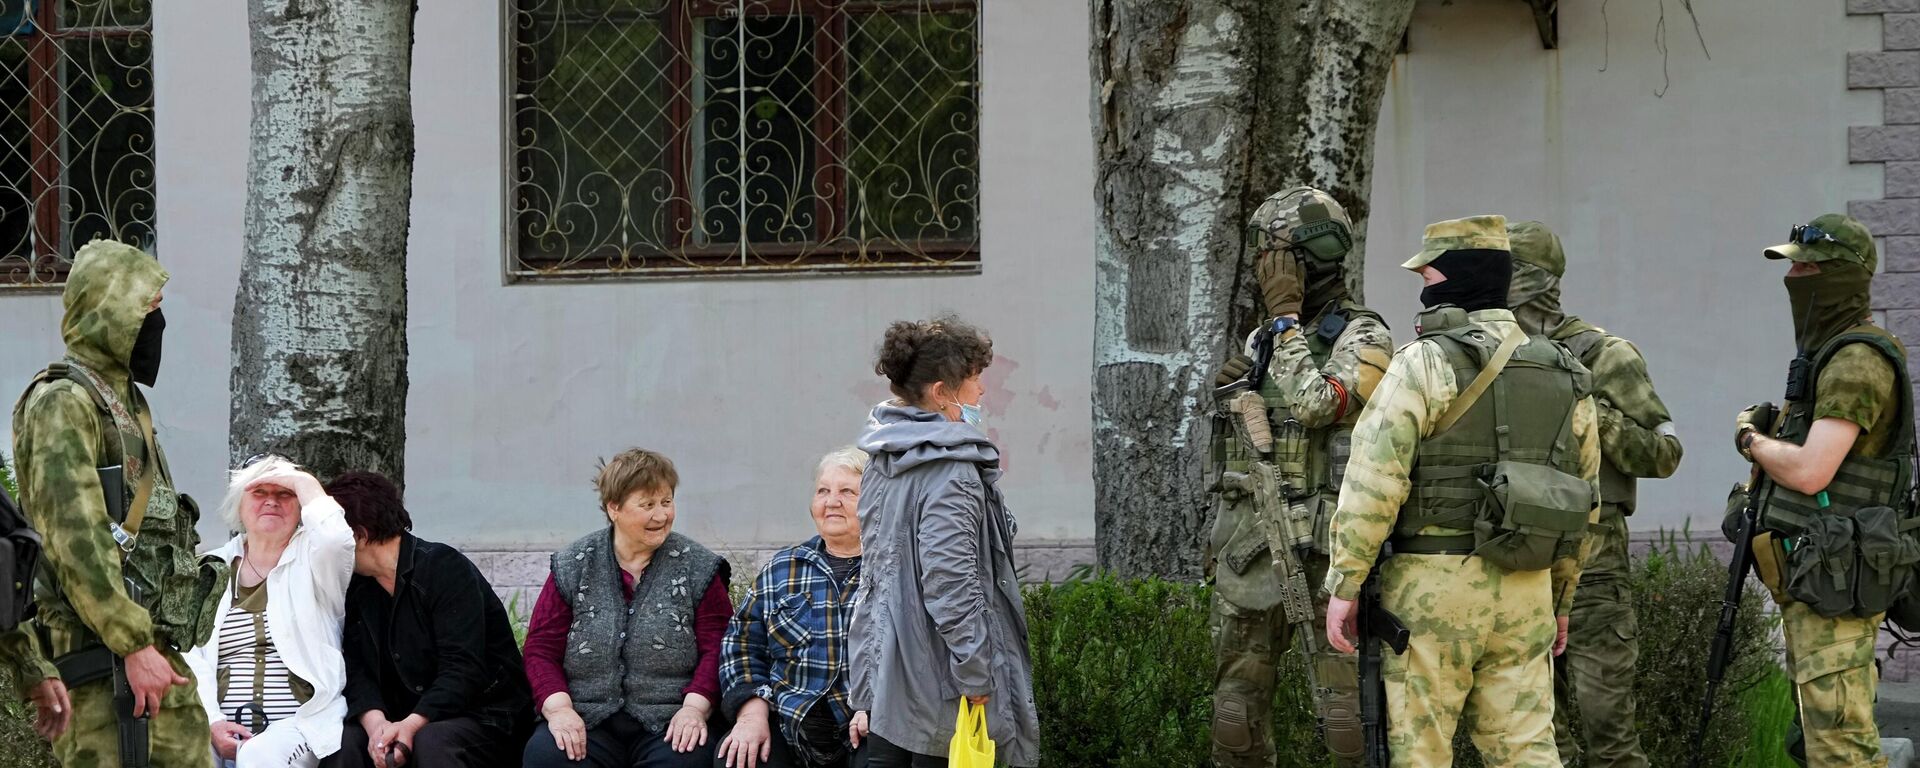 كبار السن من السكان المحليين يتحدثون إلى مجموعة من الجنود الروس في خيرسون، منطقة خيرسون، جنوب أوكرانيا، 20 مايو 2022. - سبوتنيك عربي, 1920, 30.07.2022